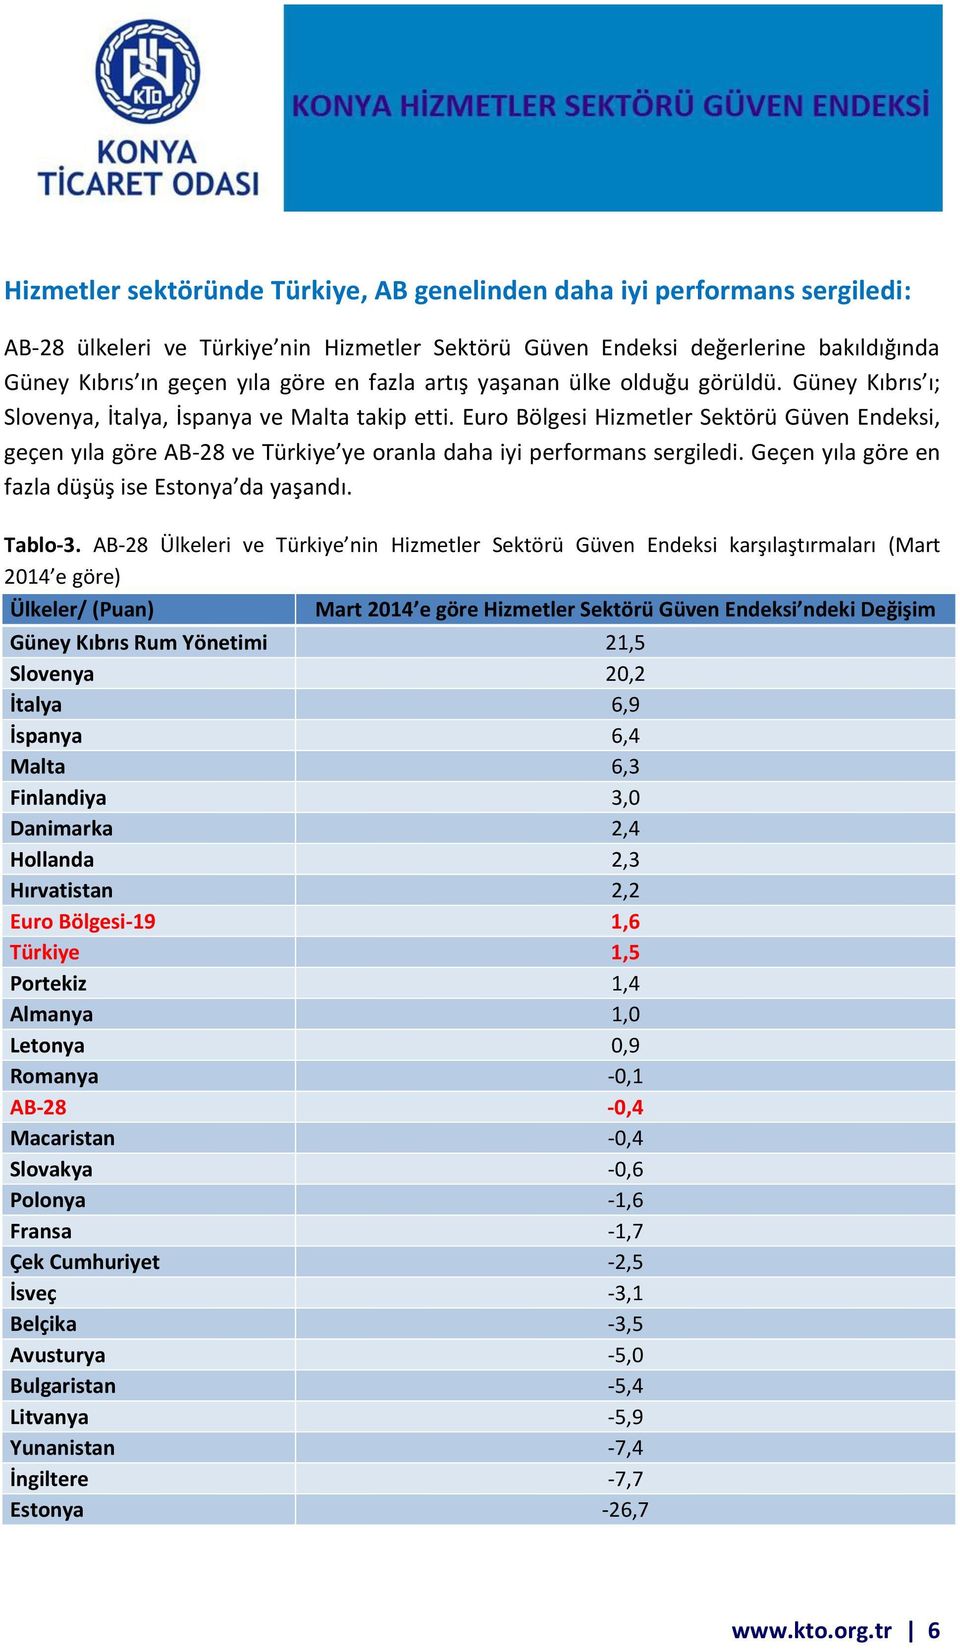 Euro Bölgesi Hizmetler Sektörü Güven Endeksi, geçe yıla göre AB- ve Türkiye ye ora la daha iyi performans sergiledi. Geçe yıla göre en fazla düşüş ise Esto ya da yaşa dı. Tablo-3.